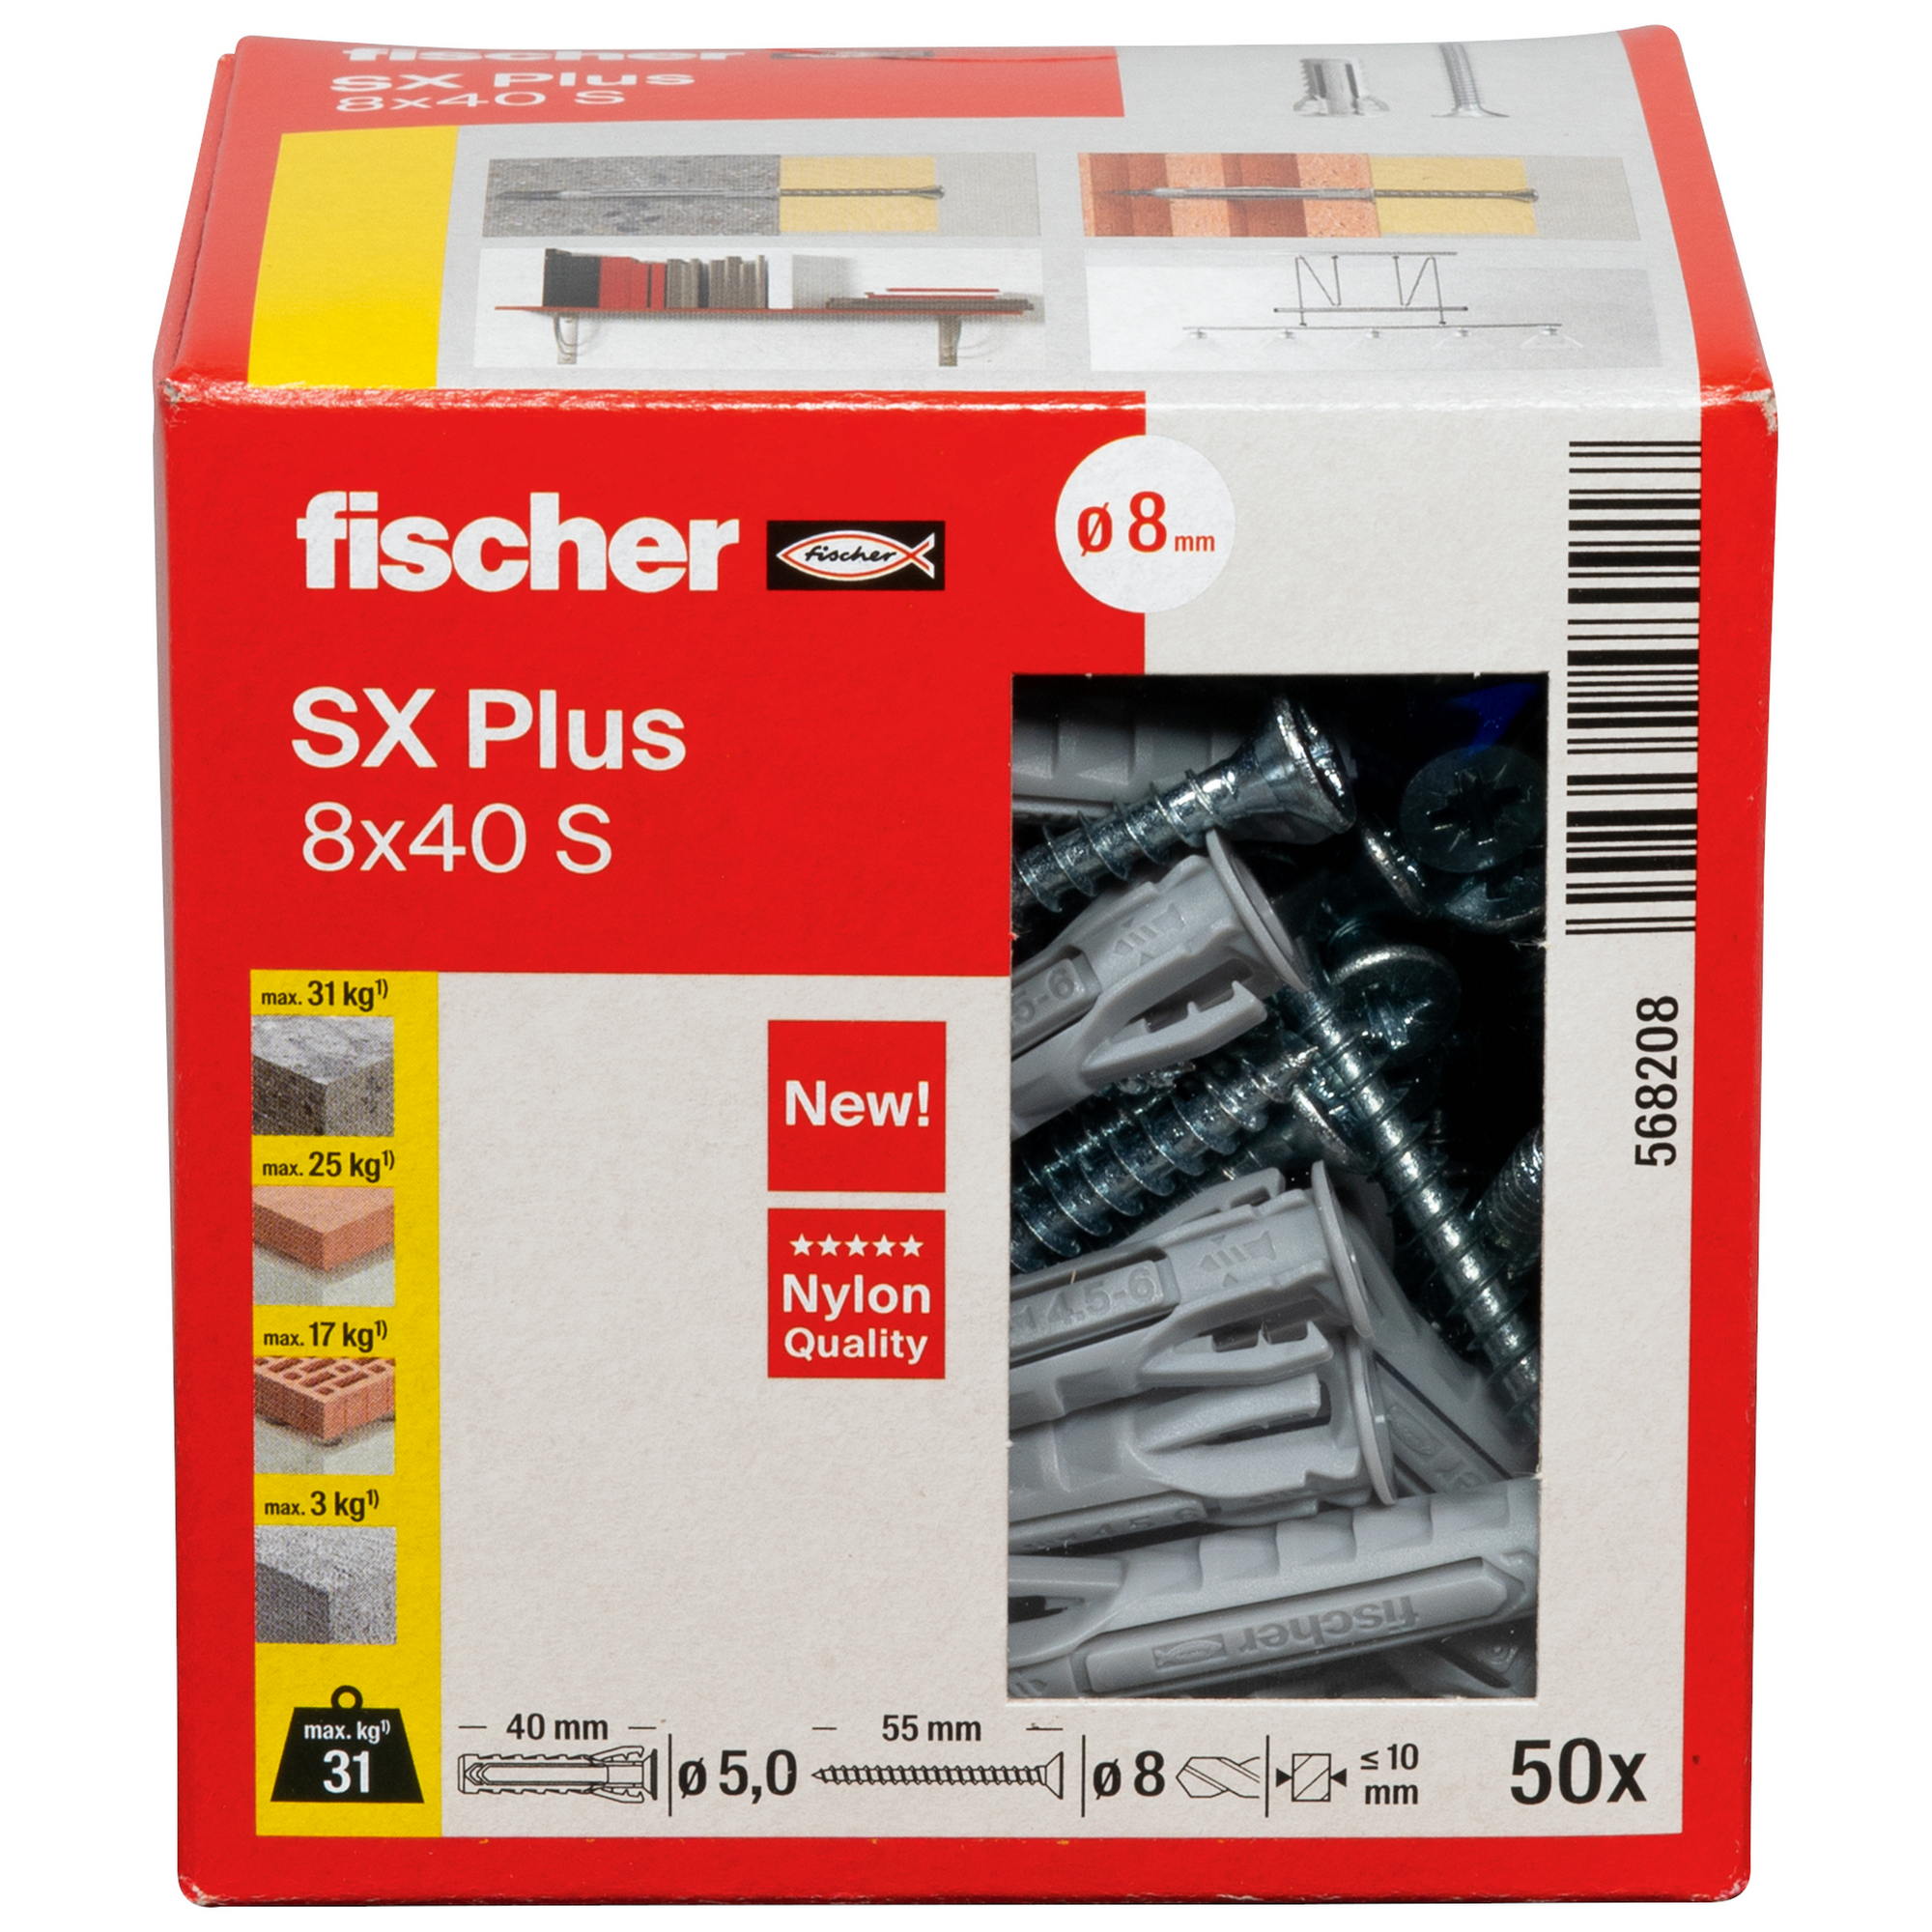 Spreizdübel-Set 'SX Plus' Ø 8 x 40 mm S mit Schraube, 50-teilig + product picture